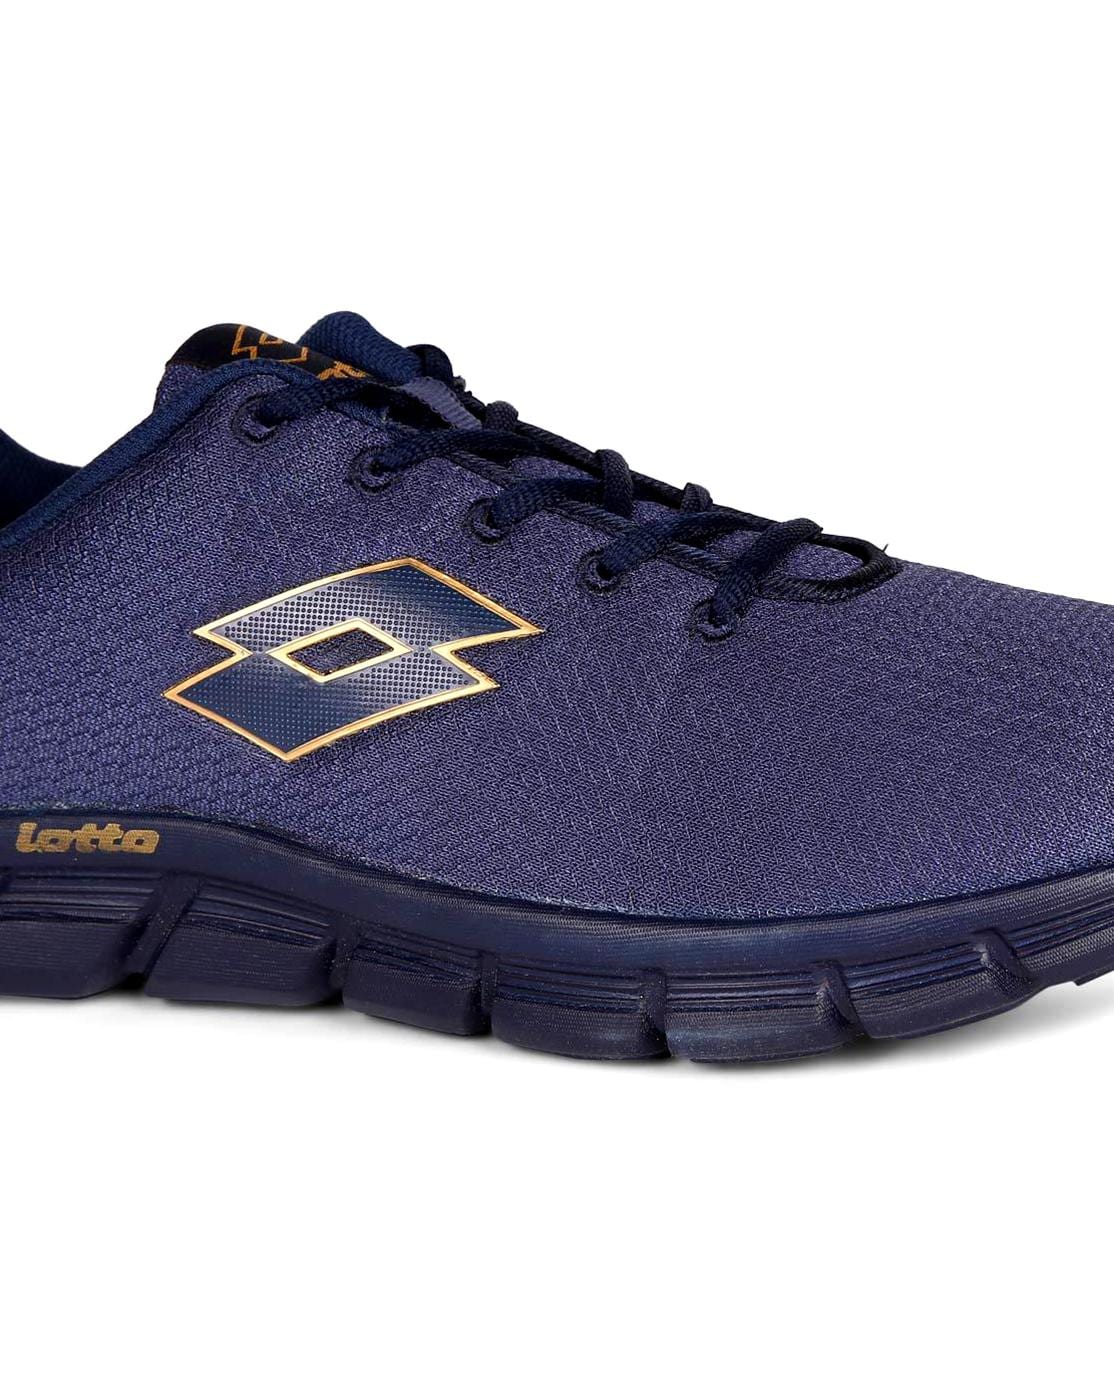 Lotto Vertigo Lace Up Running Shoes on Sale | bellvalefarms.com